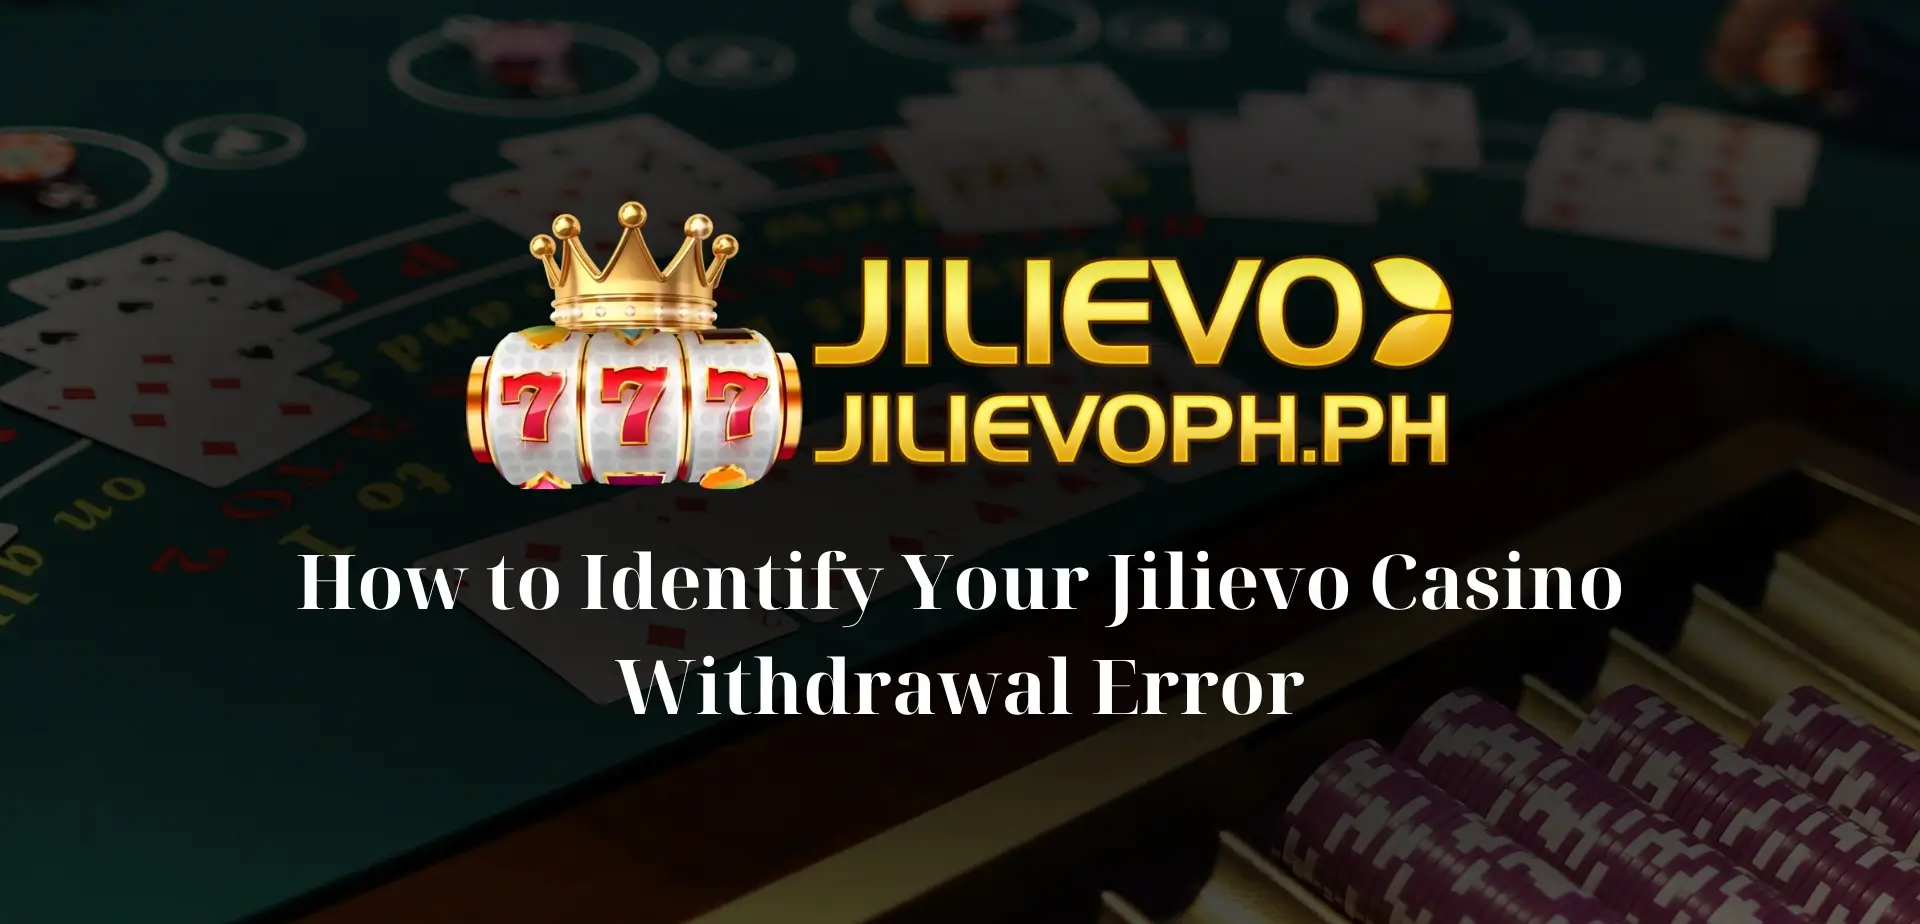 How to Identify Your Jilievo Casino Withdrawal Error